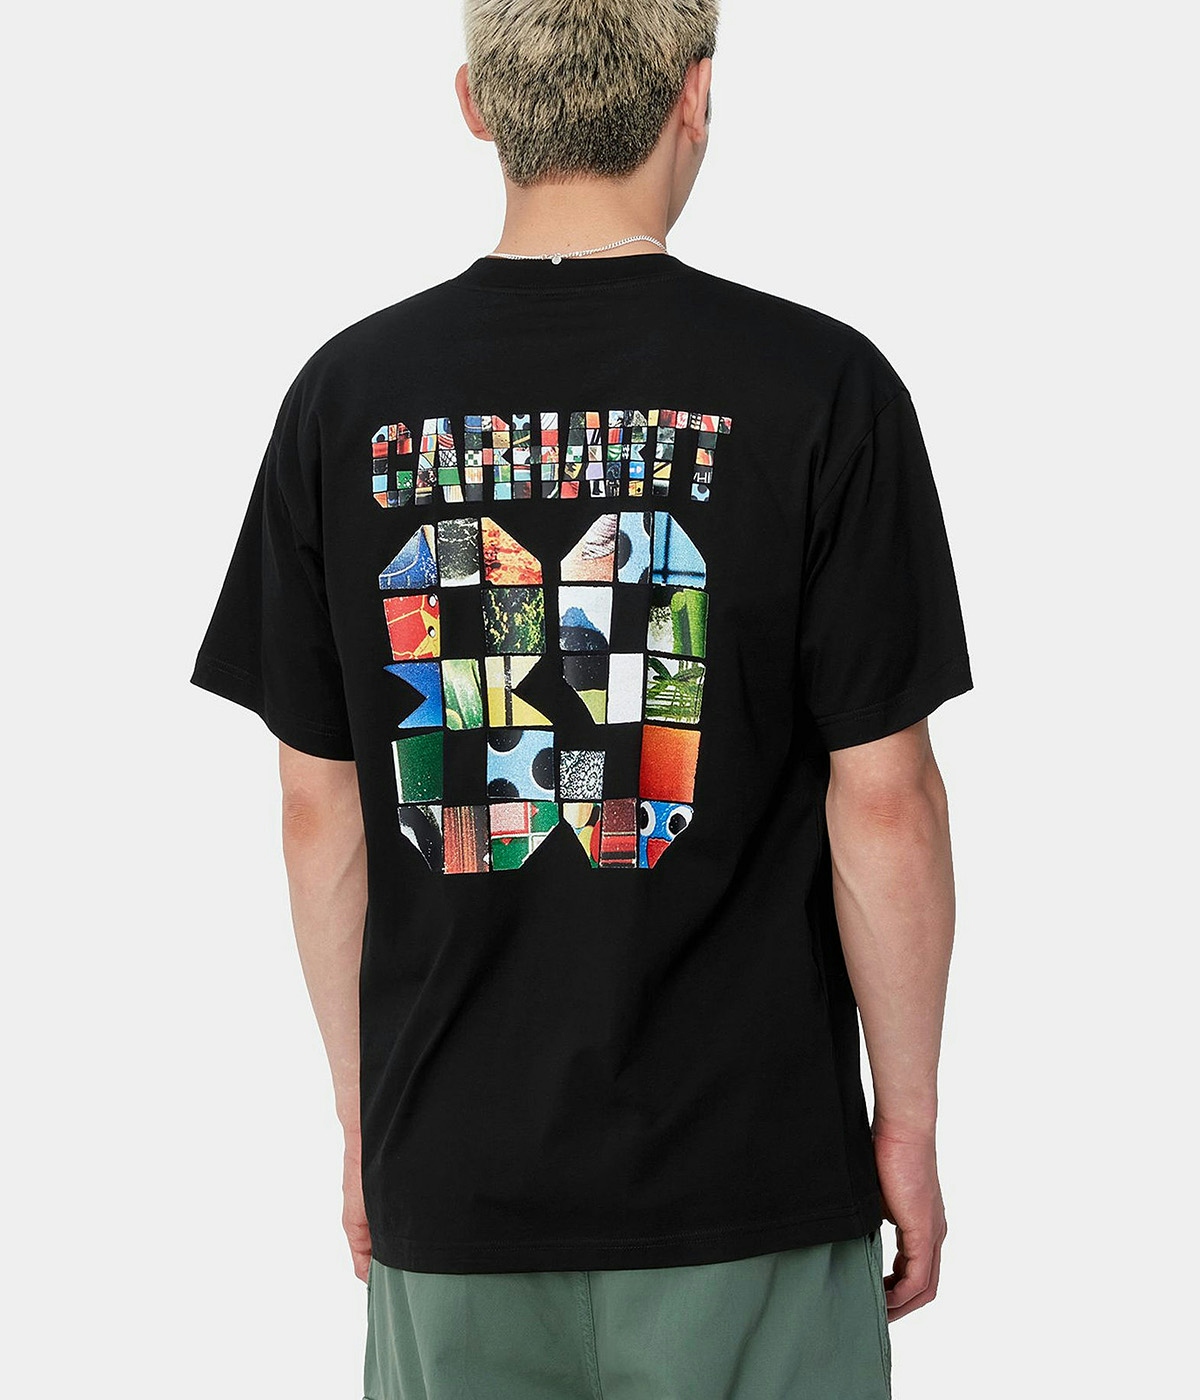 Carhartt T-shirt S/S Machine 89 Black